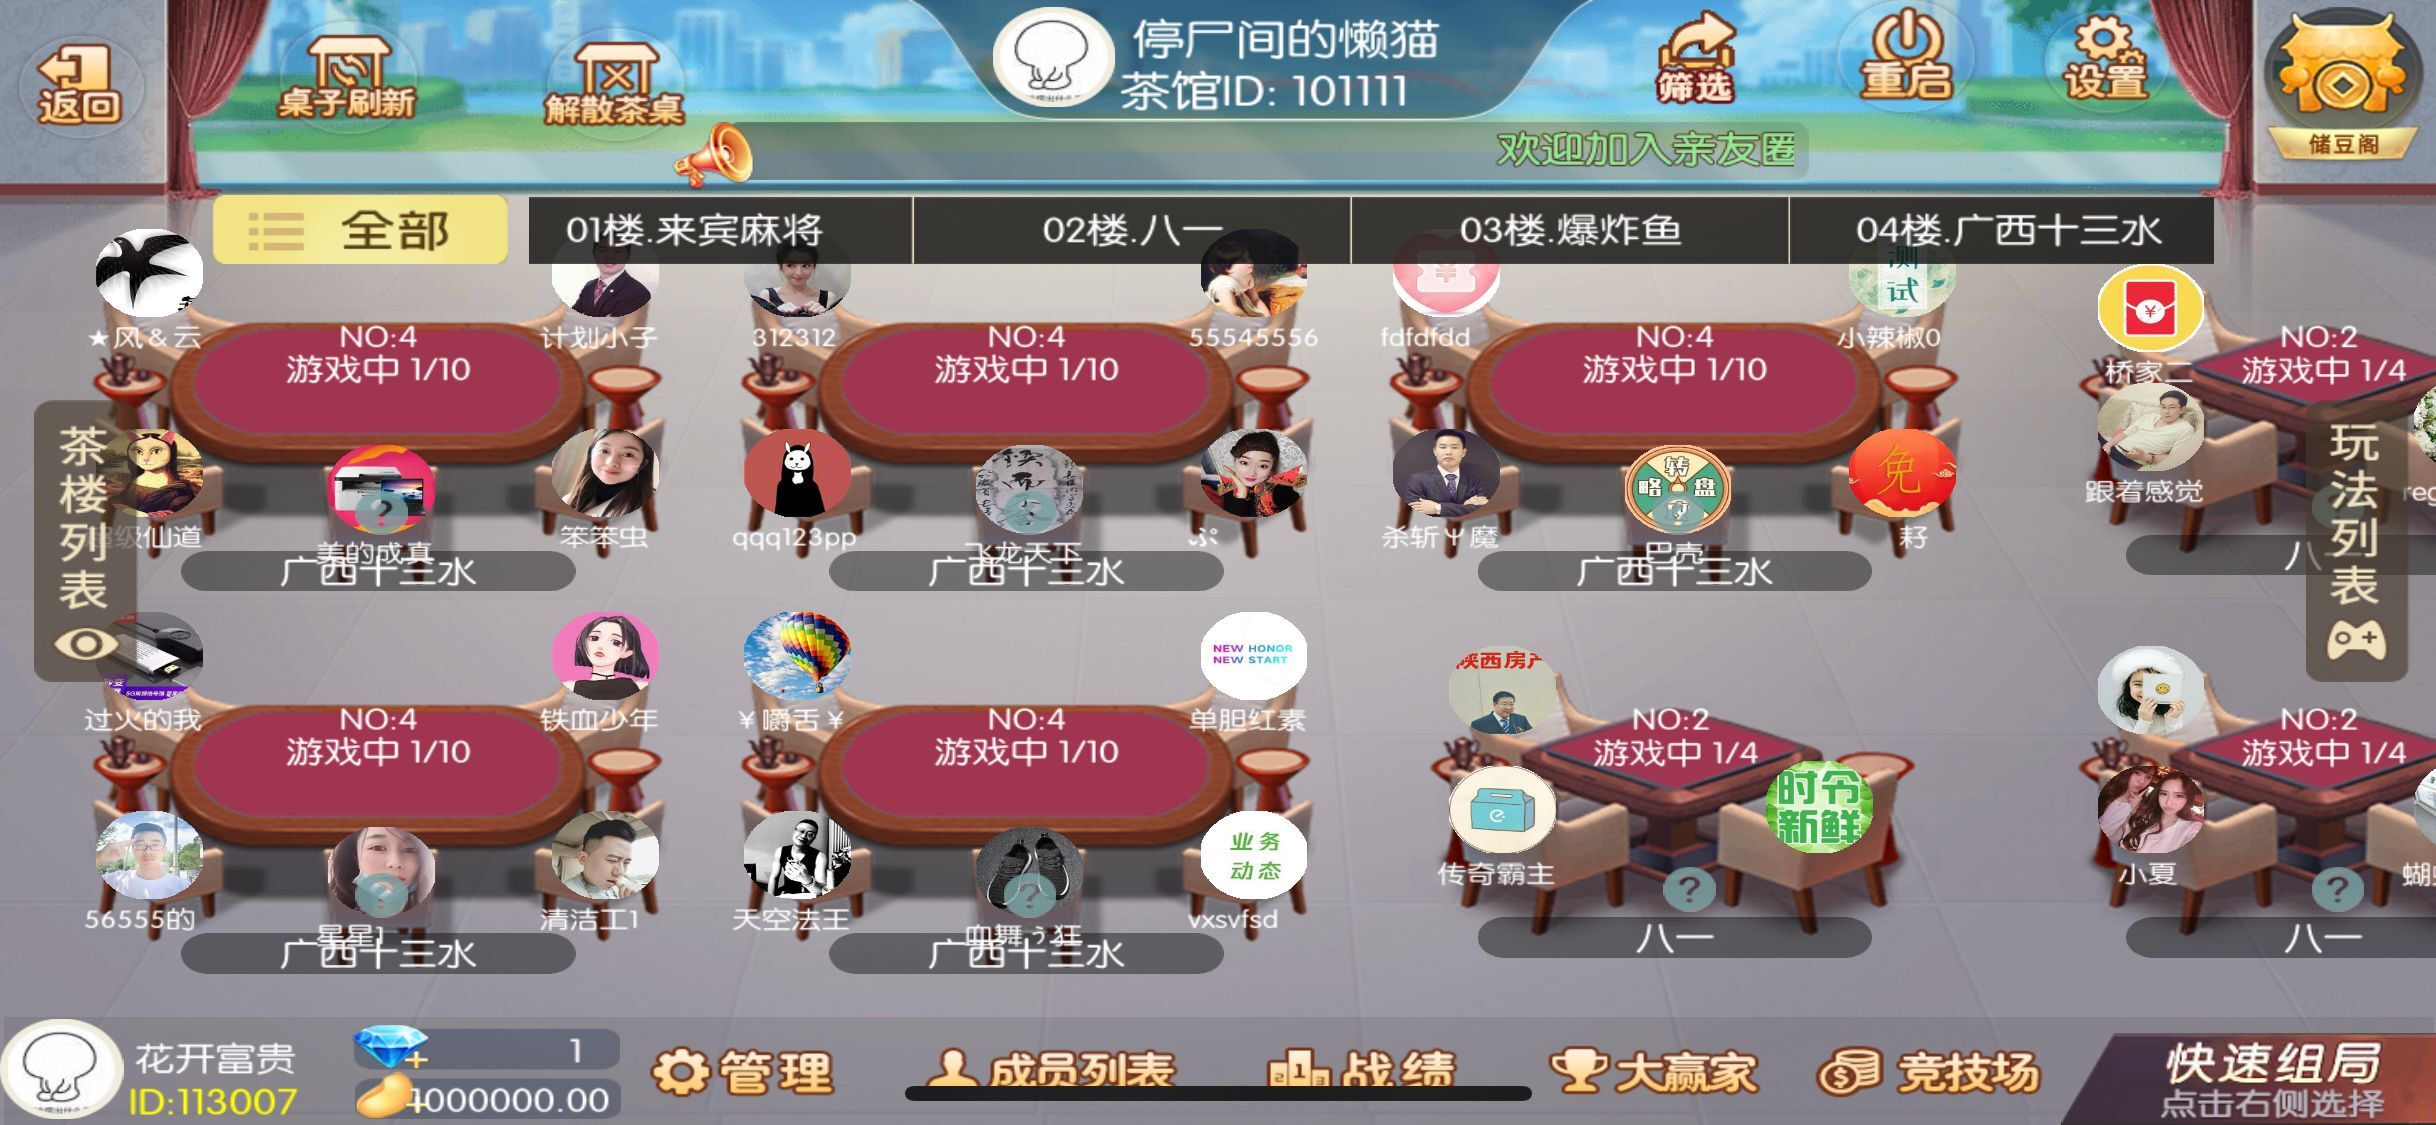 网狐系列广西地方玩法完整组件带占位机器人插图4